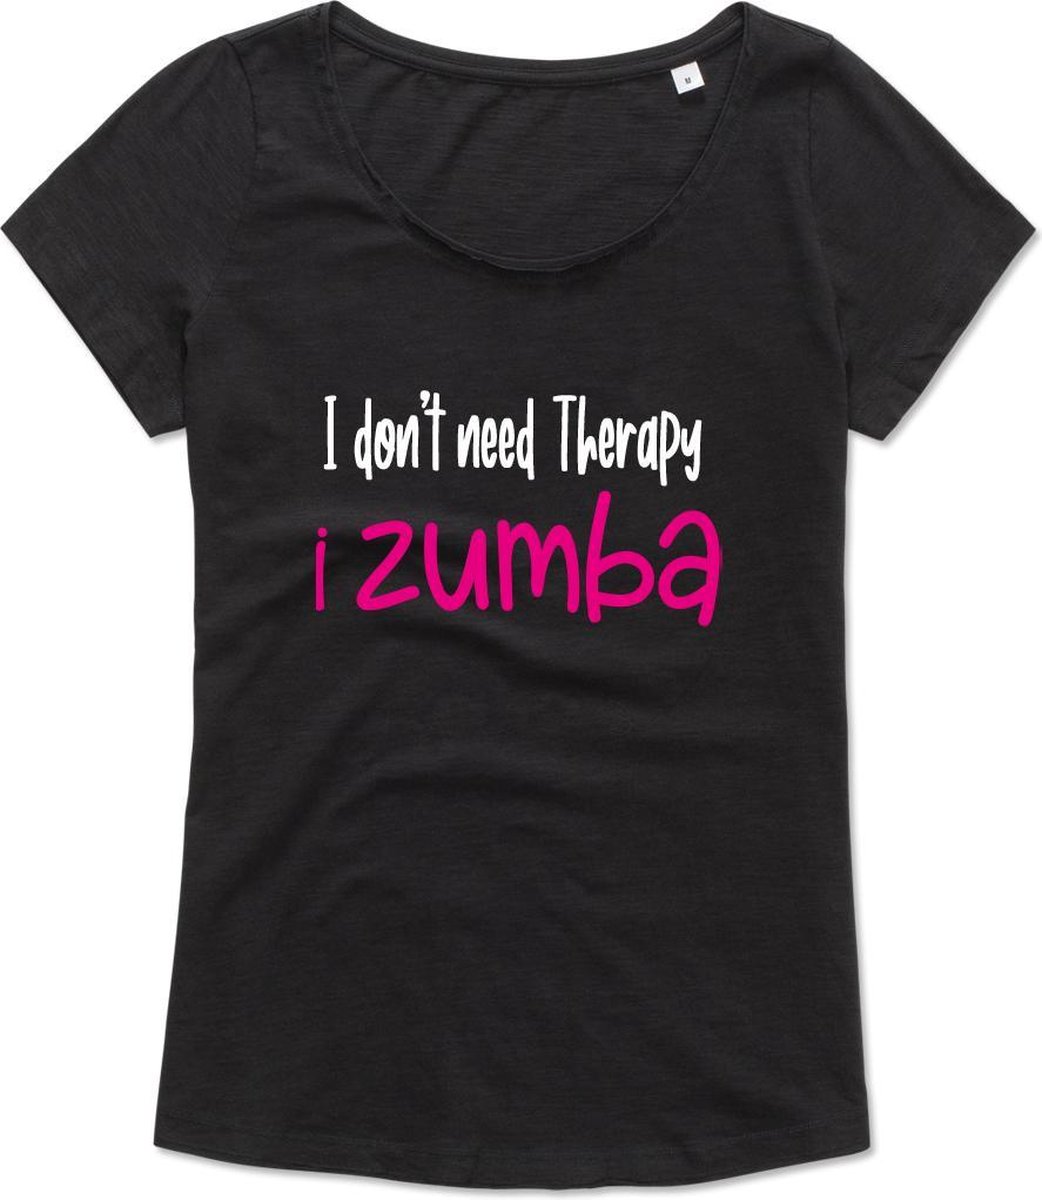 Zumba T-shirt - Workout T-shirt - Dance T-shirt, dans t-shirt, sport t-shirt, Gym T-shirt, Lifestyle T-shirt - I Don't need therapy, I zumba – S